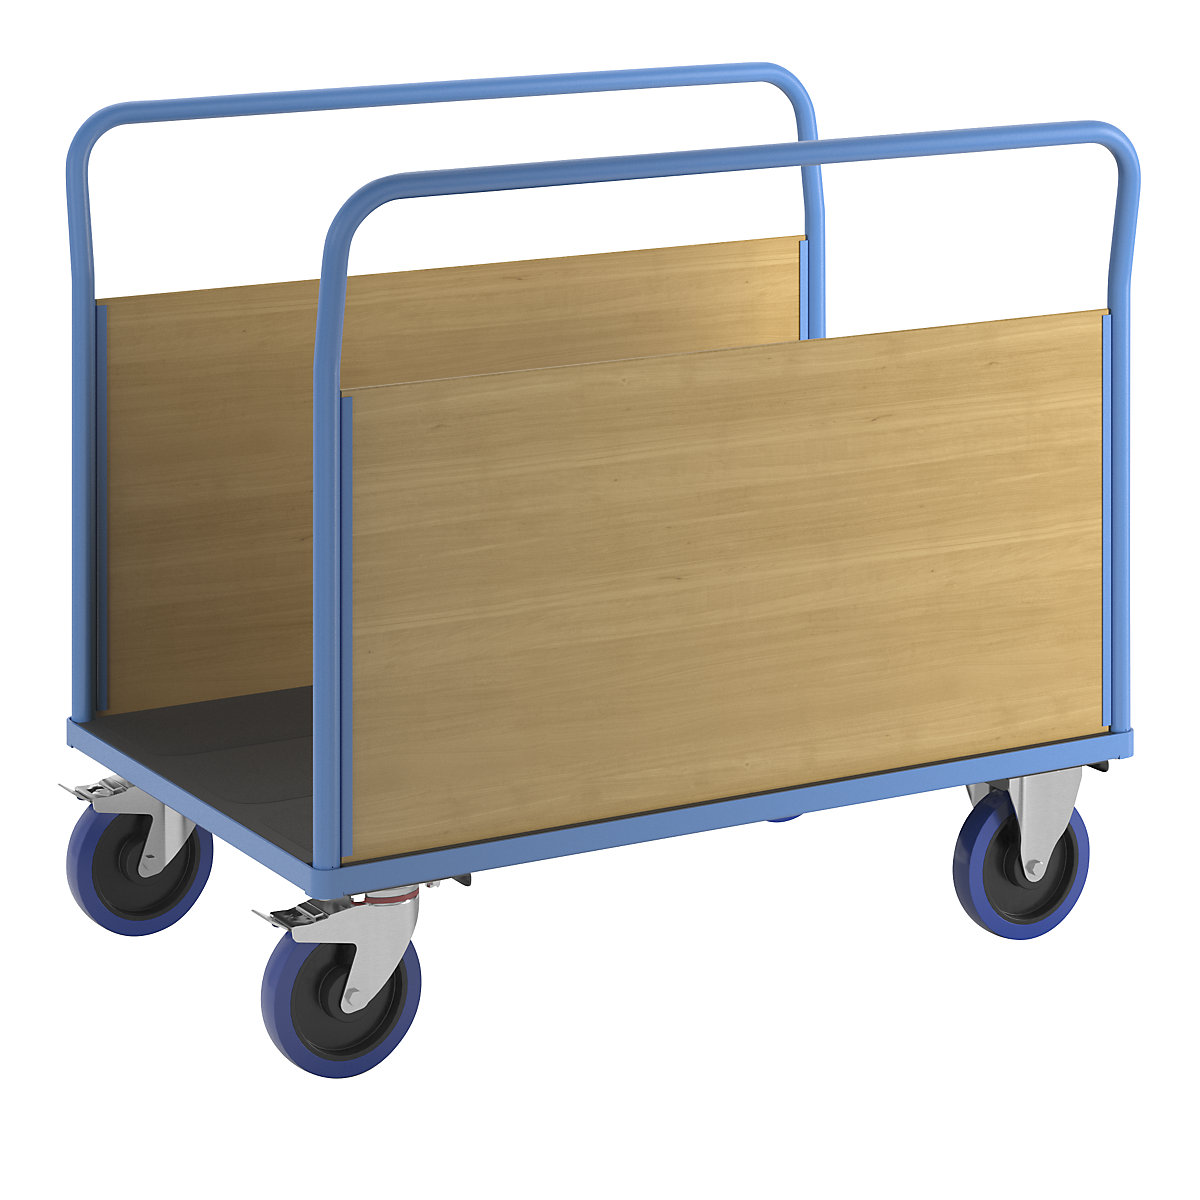 Platformwagen met houten wanden – eurokraft pro